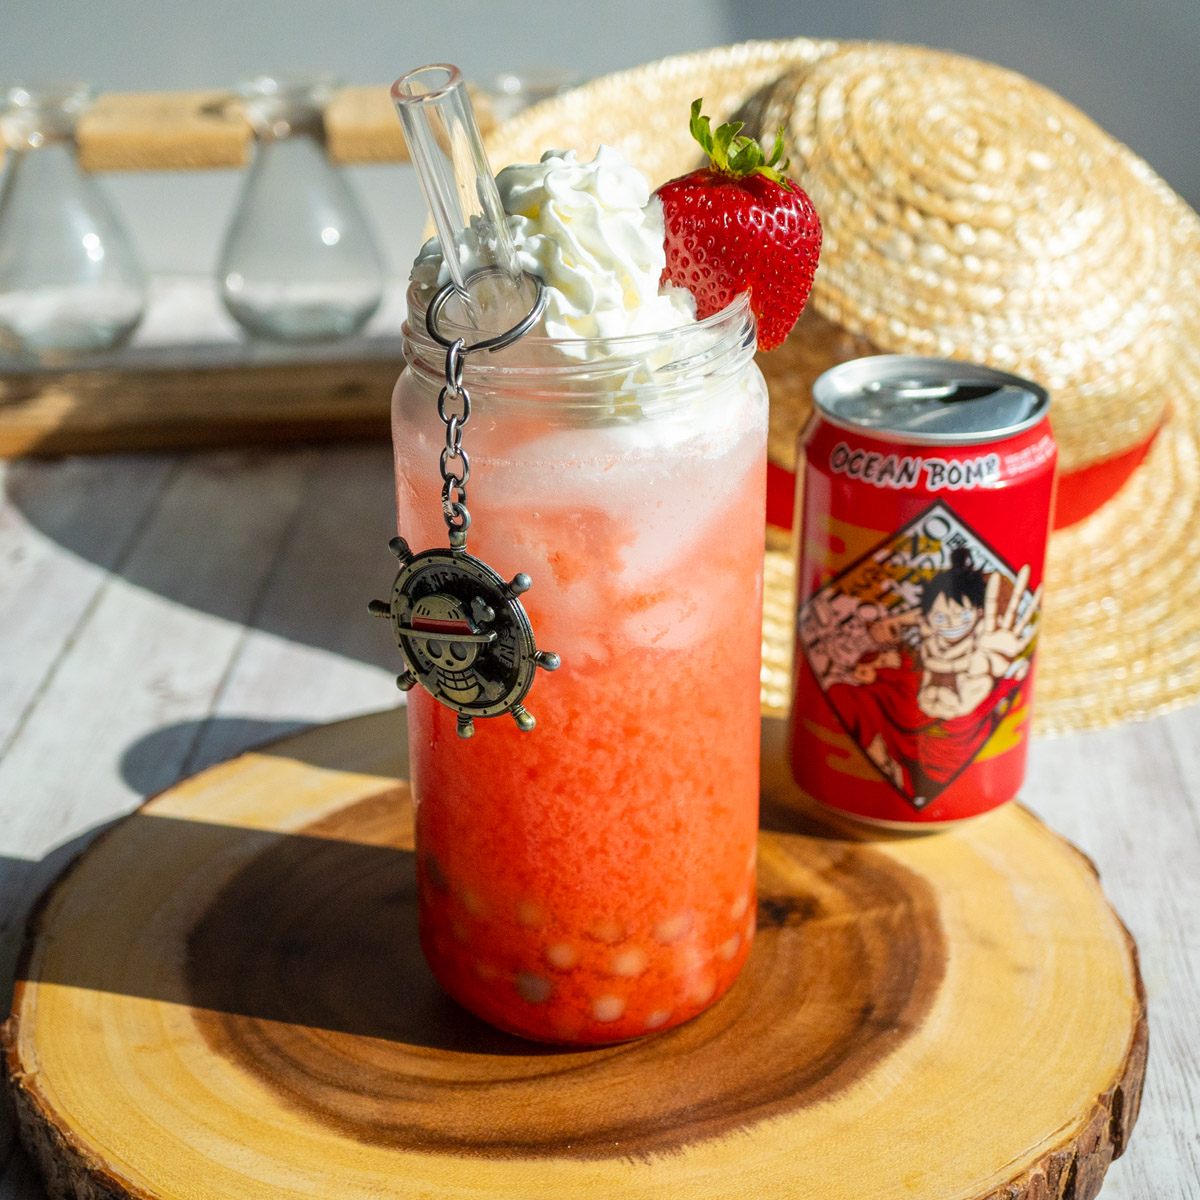 One Piece Strawberry Yogurt Fizzy Drink Recipe for Monkey D Luffy